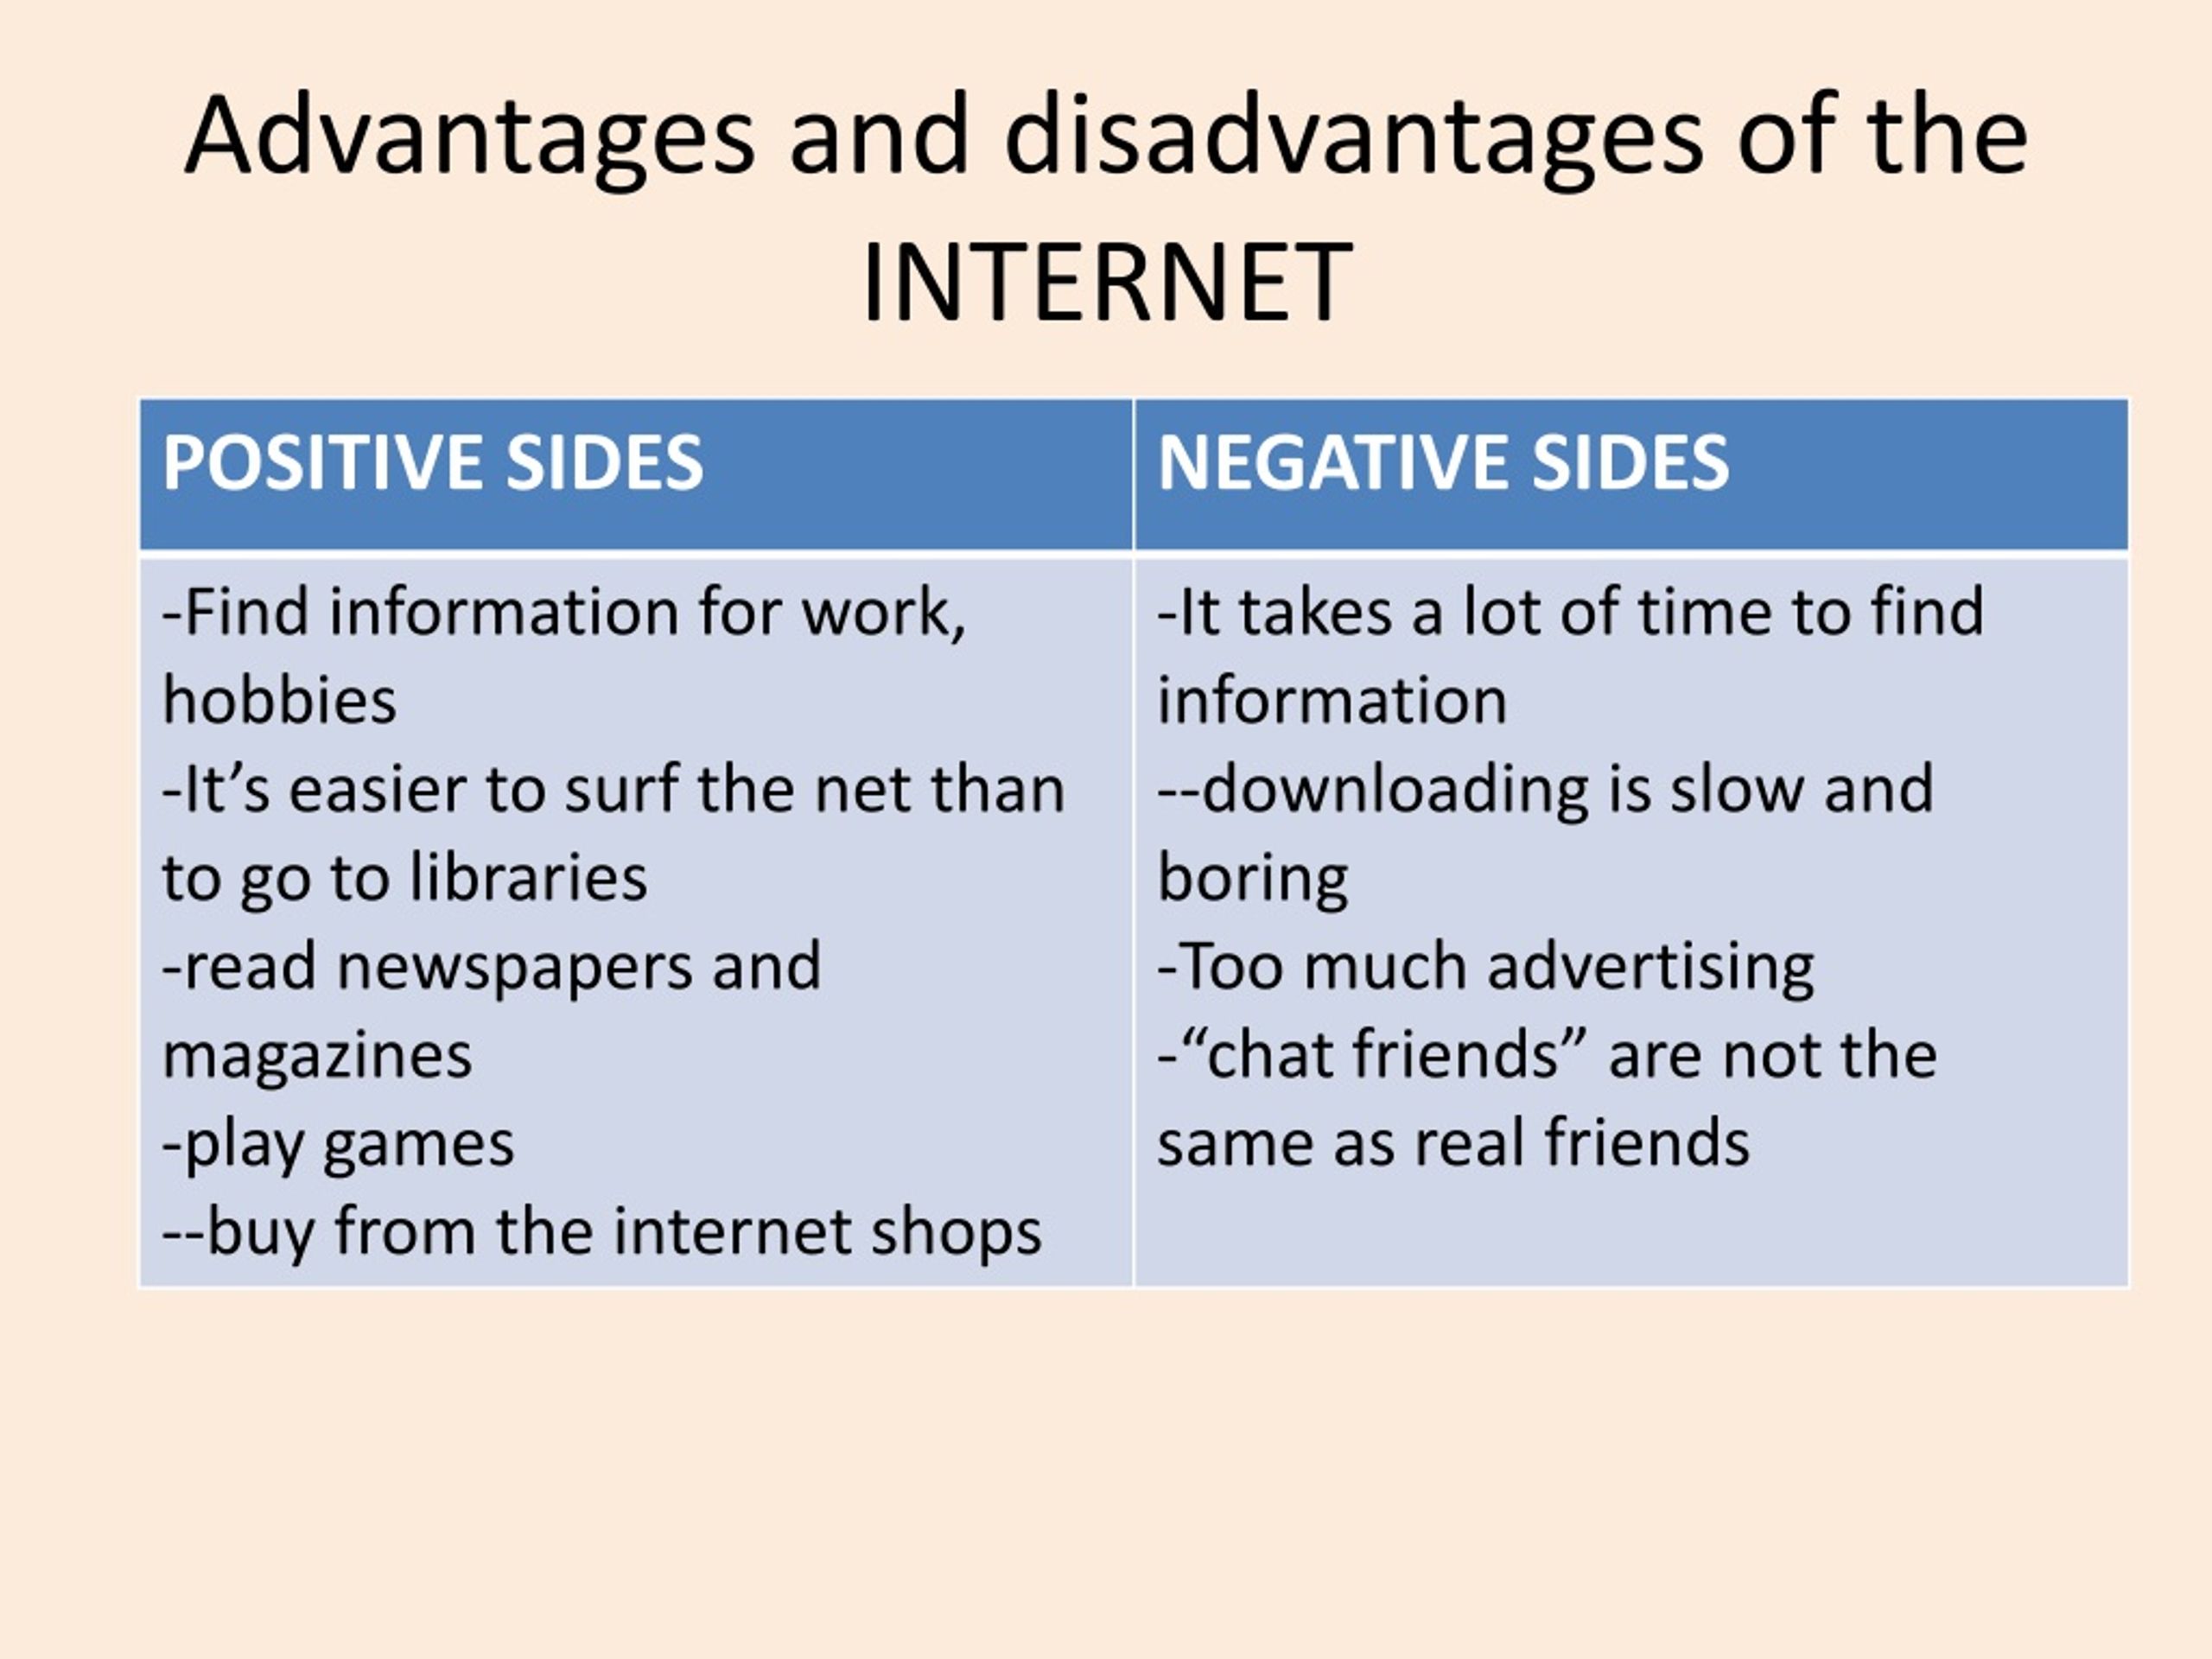 presentation disadvantages of internet